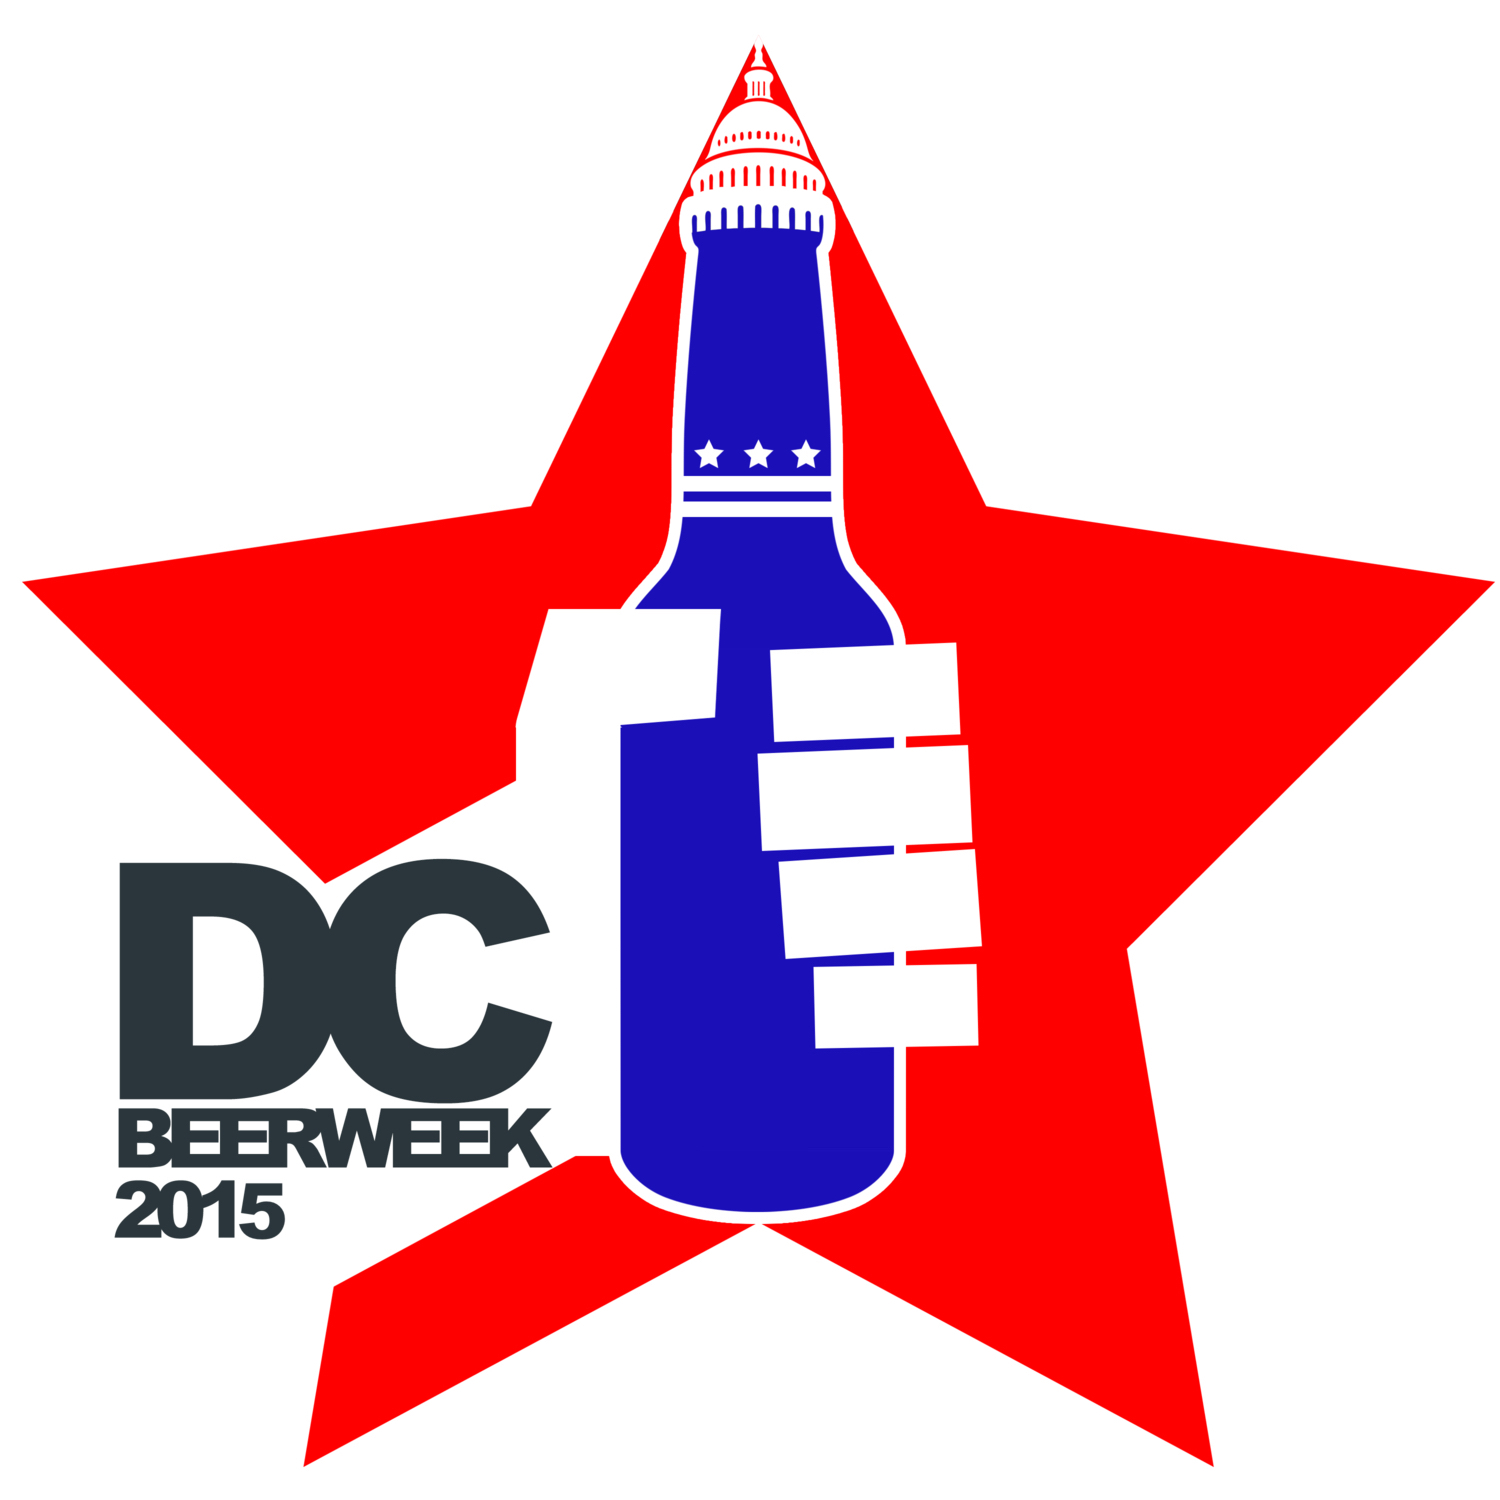 Dc Beer Week coming August 9th, 2015!